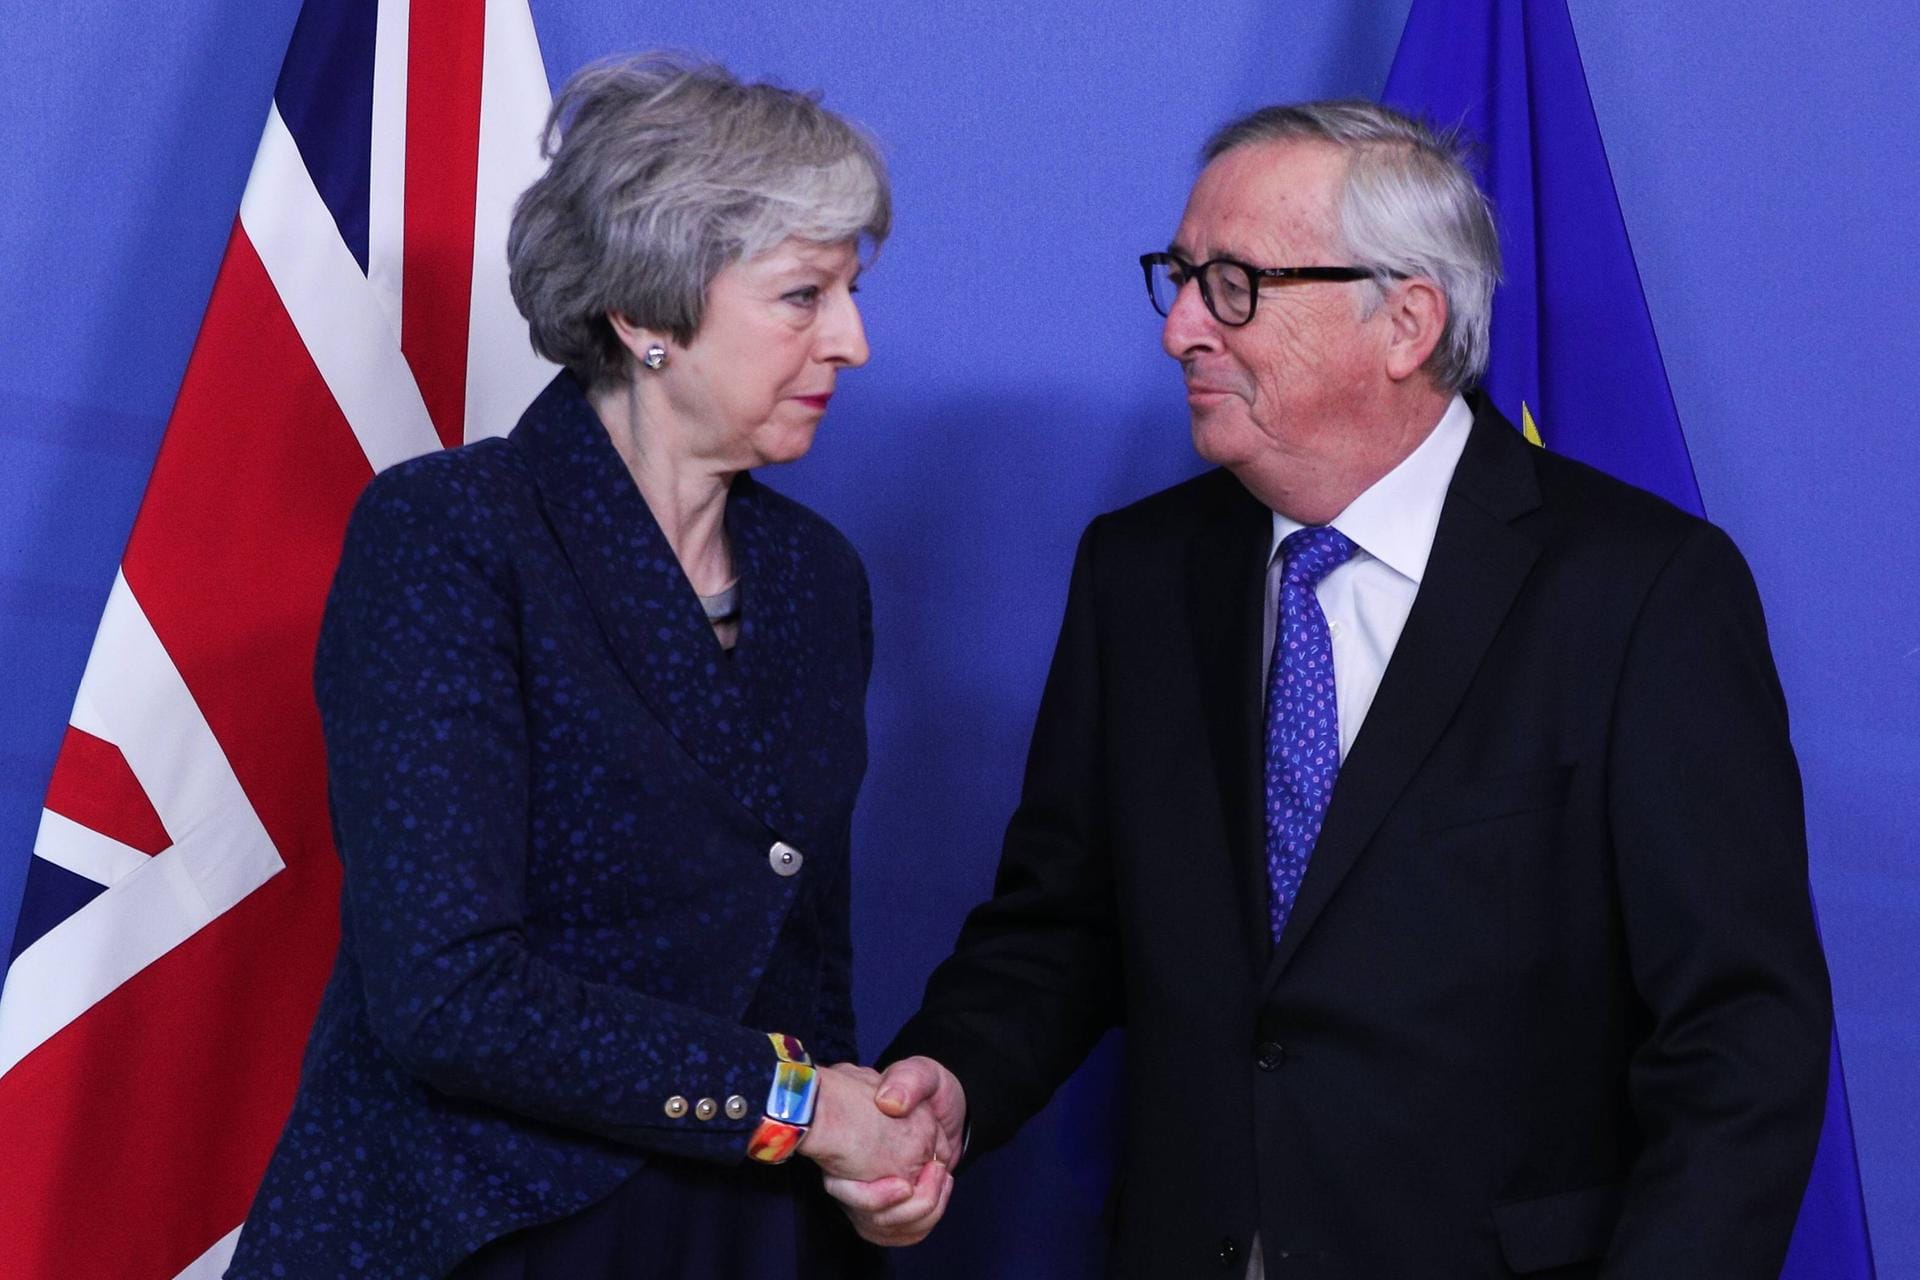 Der Imitator: In seine Zeit als EU-Chef fiel das große Brexit-Drama. Auch hier erlaubte sich Juncker einige Späße. Zum Beispiel auf Kosten von Premierminister Theresa May. Als die in der Heimat wegen ziemlich hölzerner Tanzversuche Schlagzeilen machte, imitierte Juncker das bei einem Brexit-Gipfel.